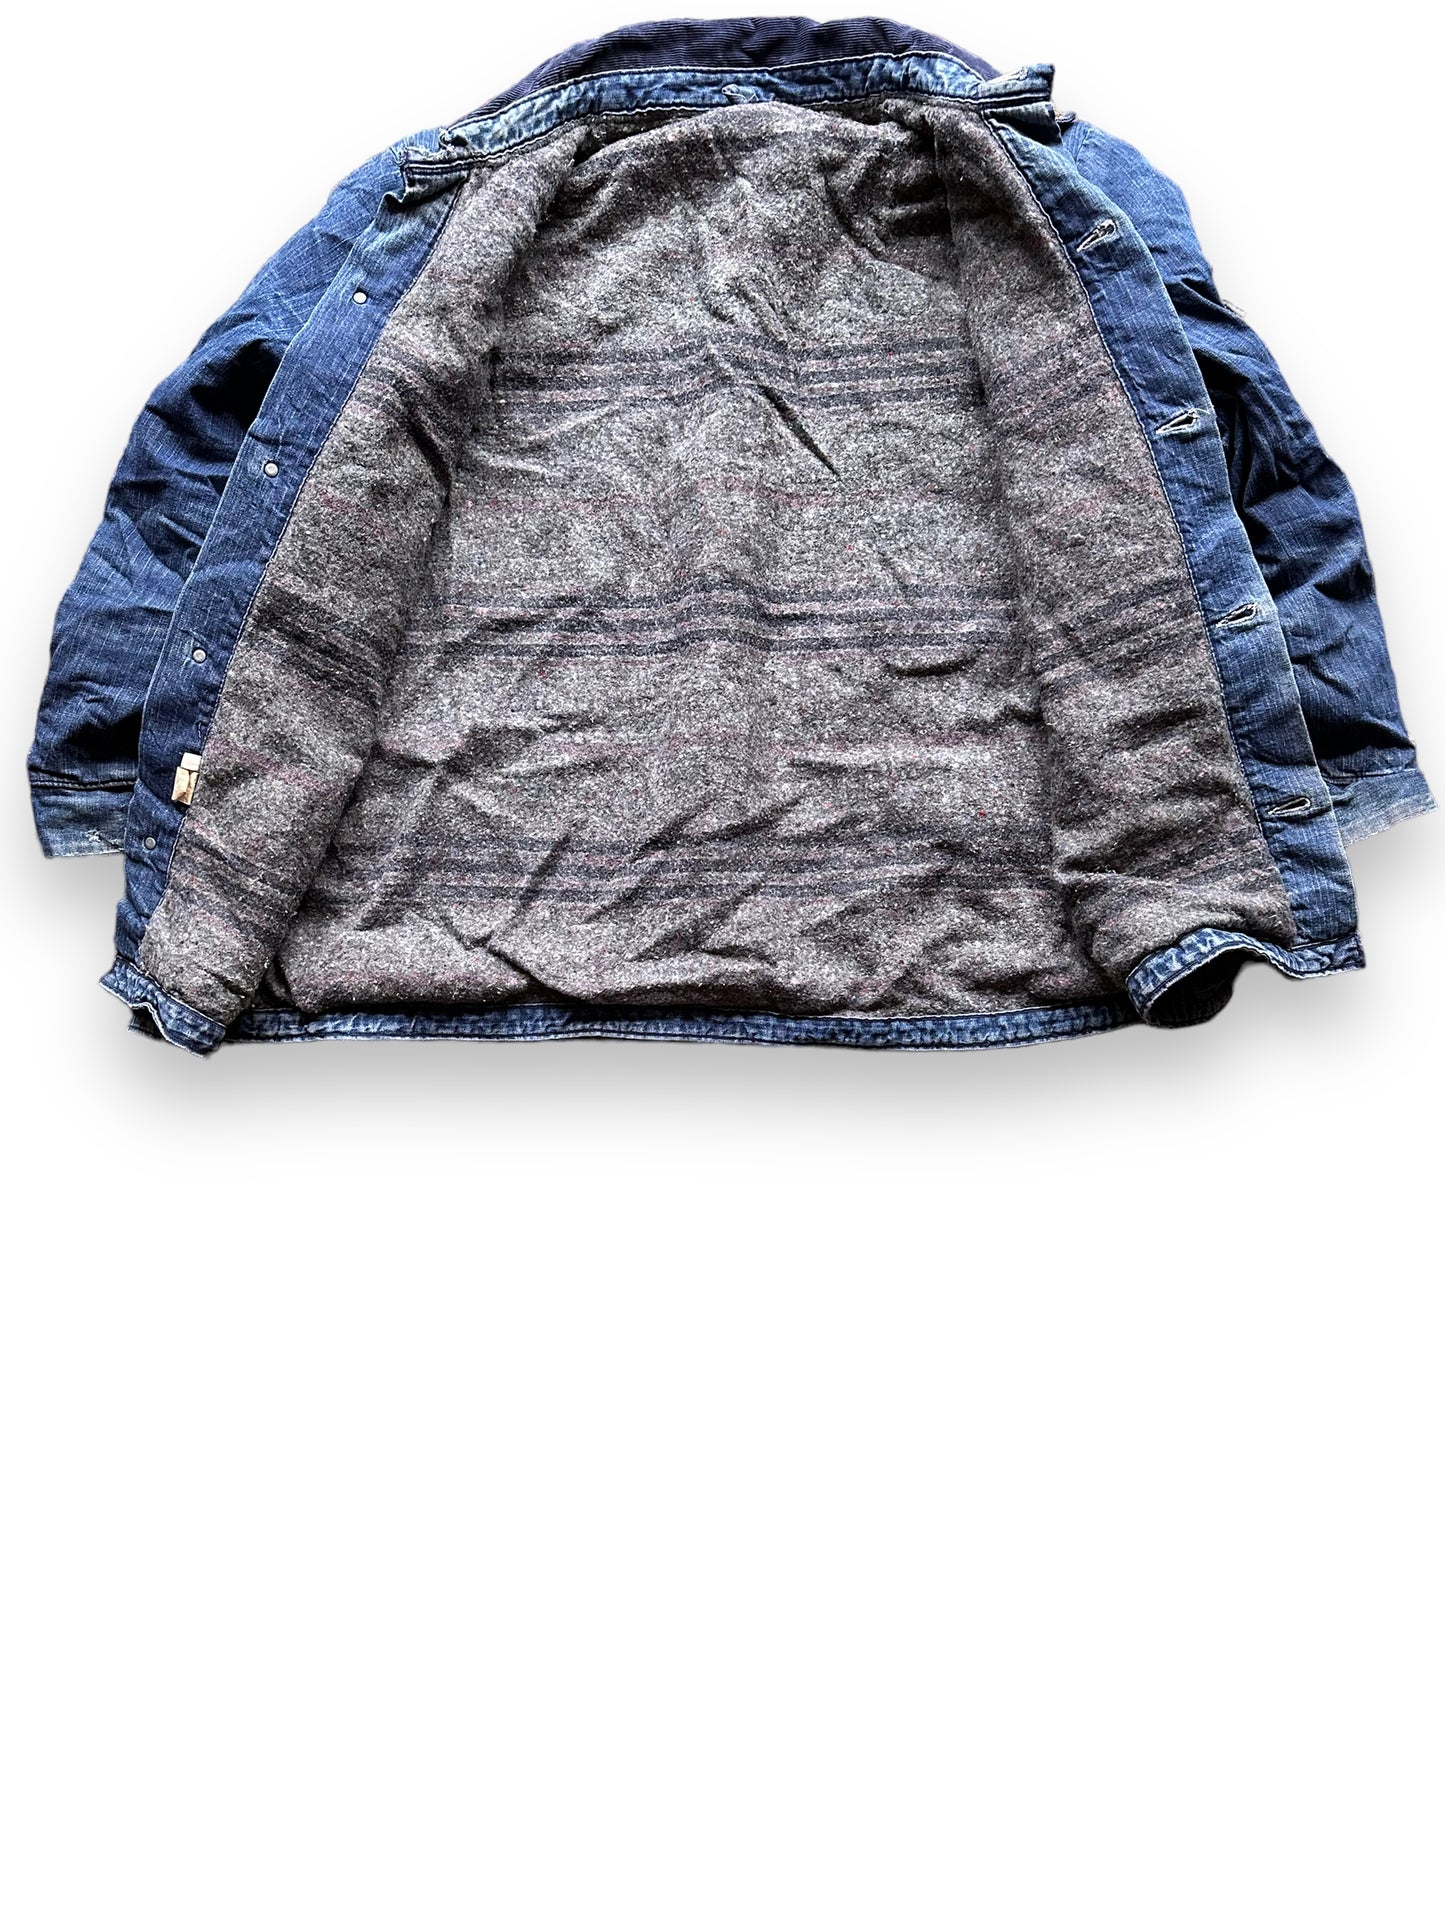 Liner View of Vintage Blanket Lined Wrangler Blue Bell Chore Coat SZ 50 | Vintage Denim Jacket Seattle | Seattle Vintage Clothing